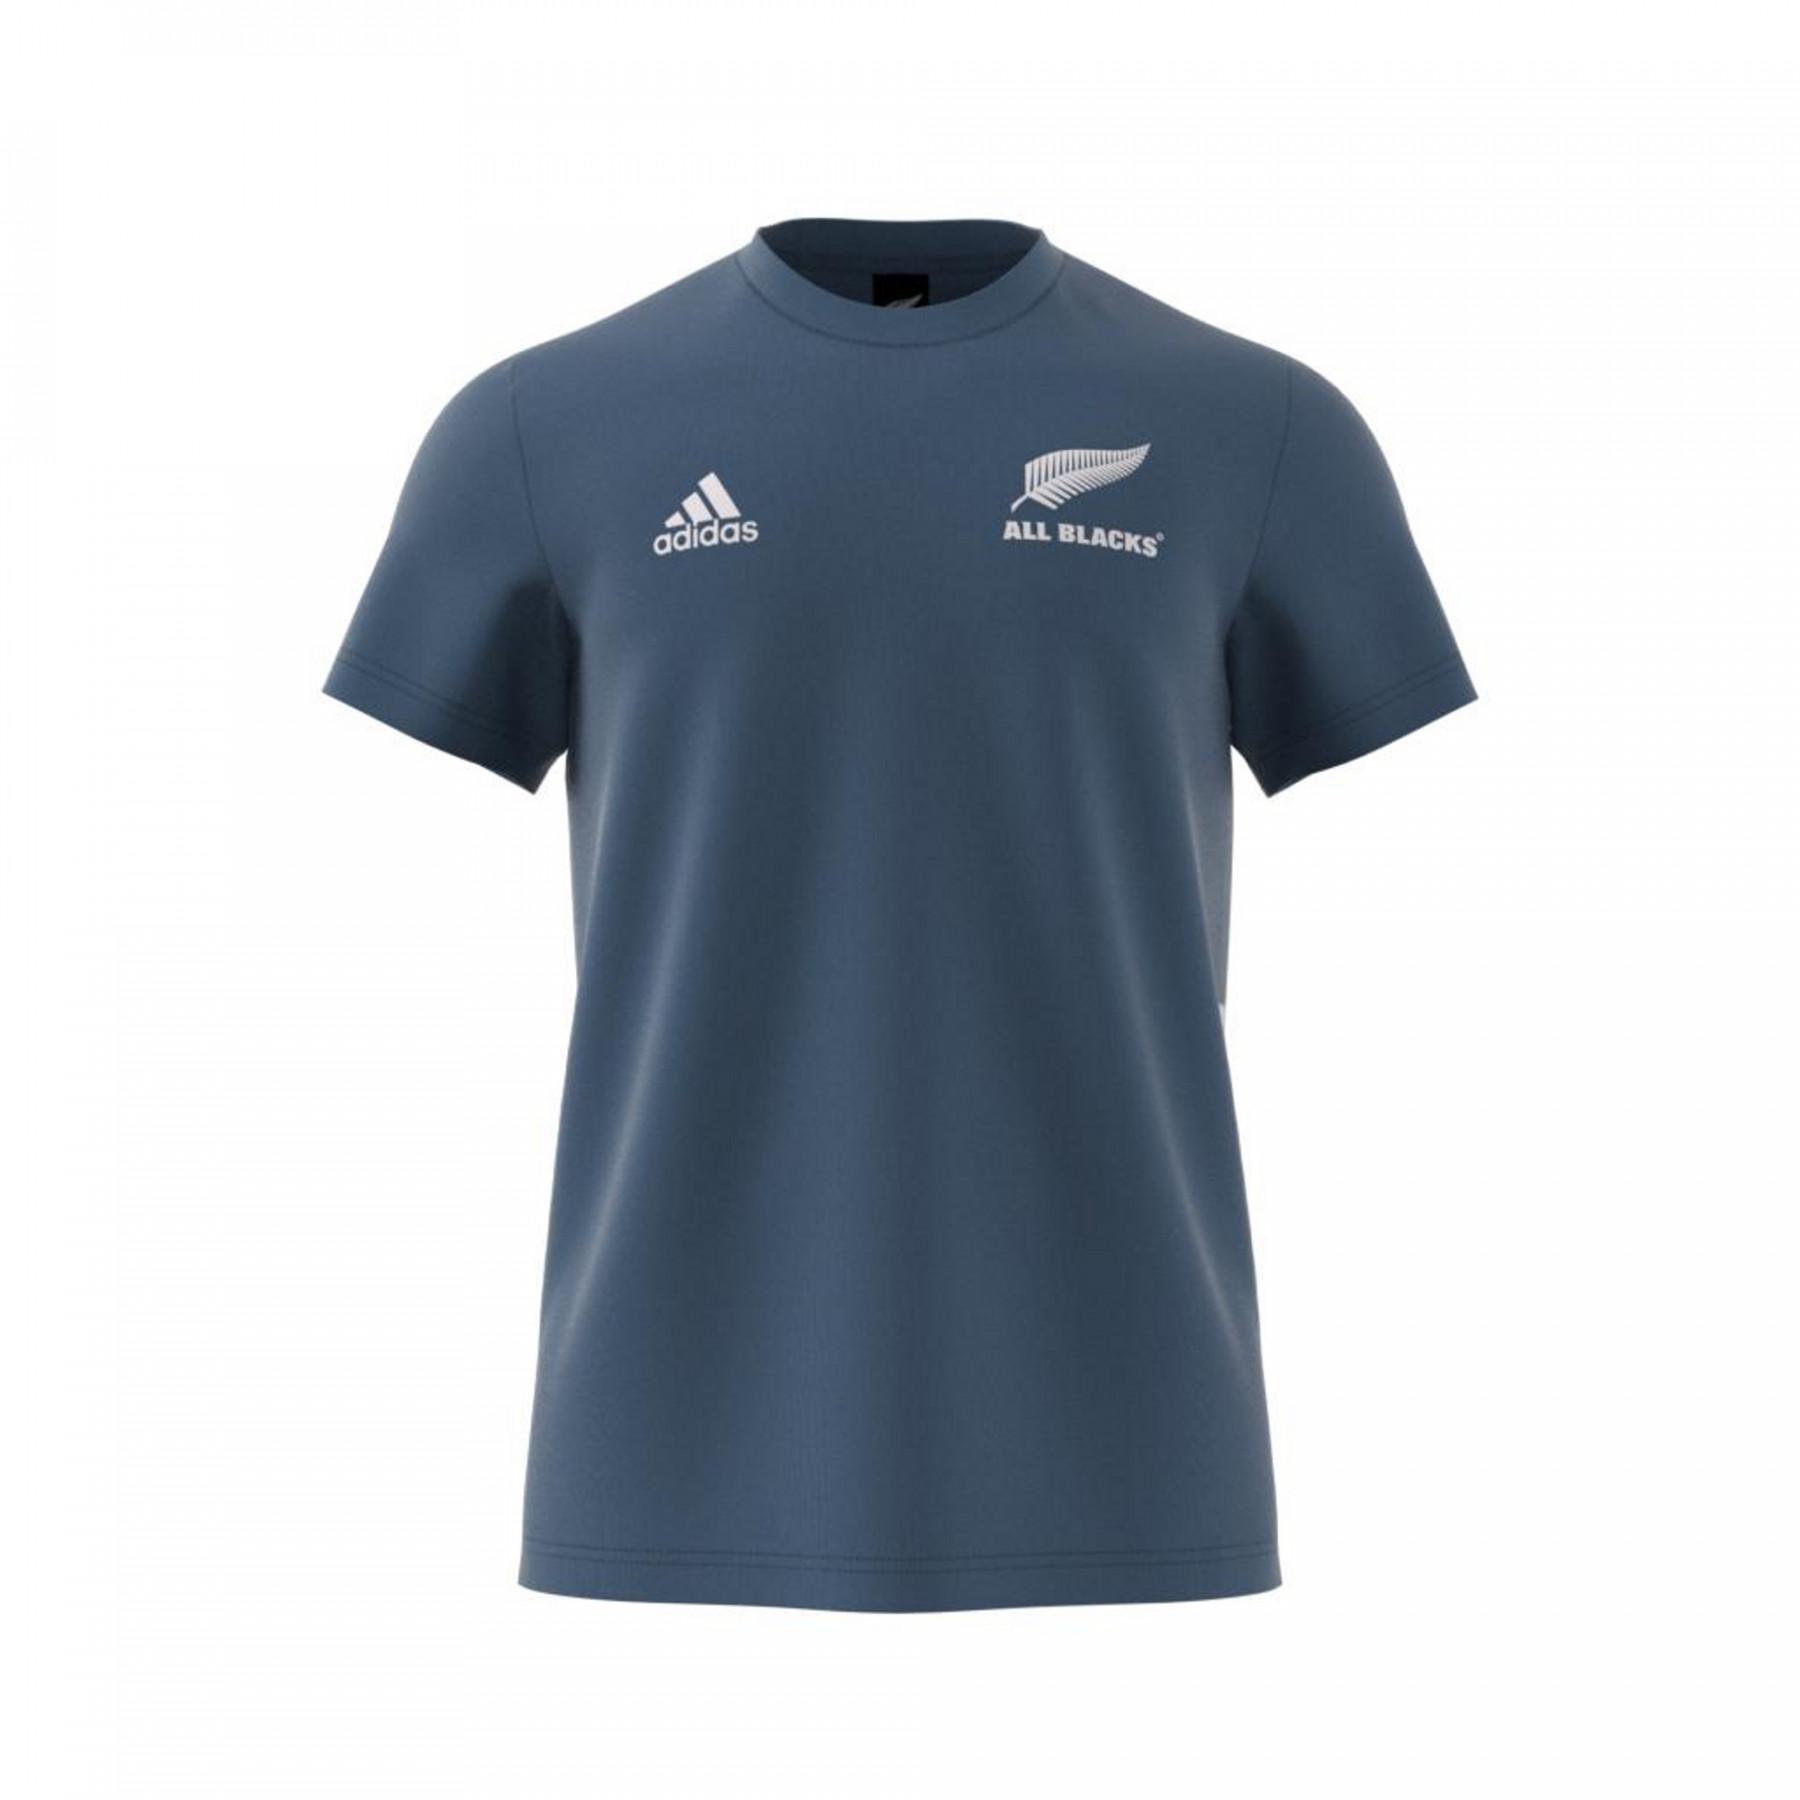 T-shirt All Blacks 2020